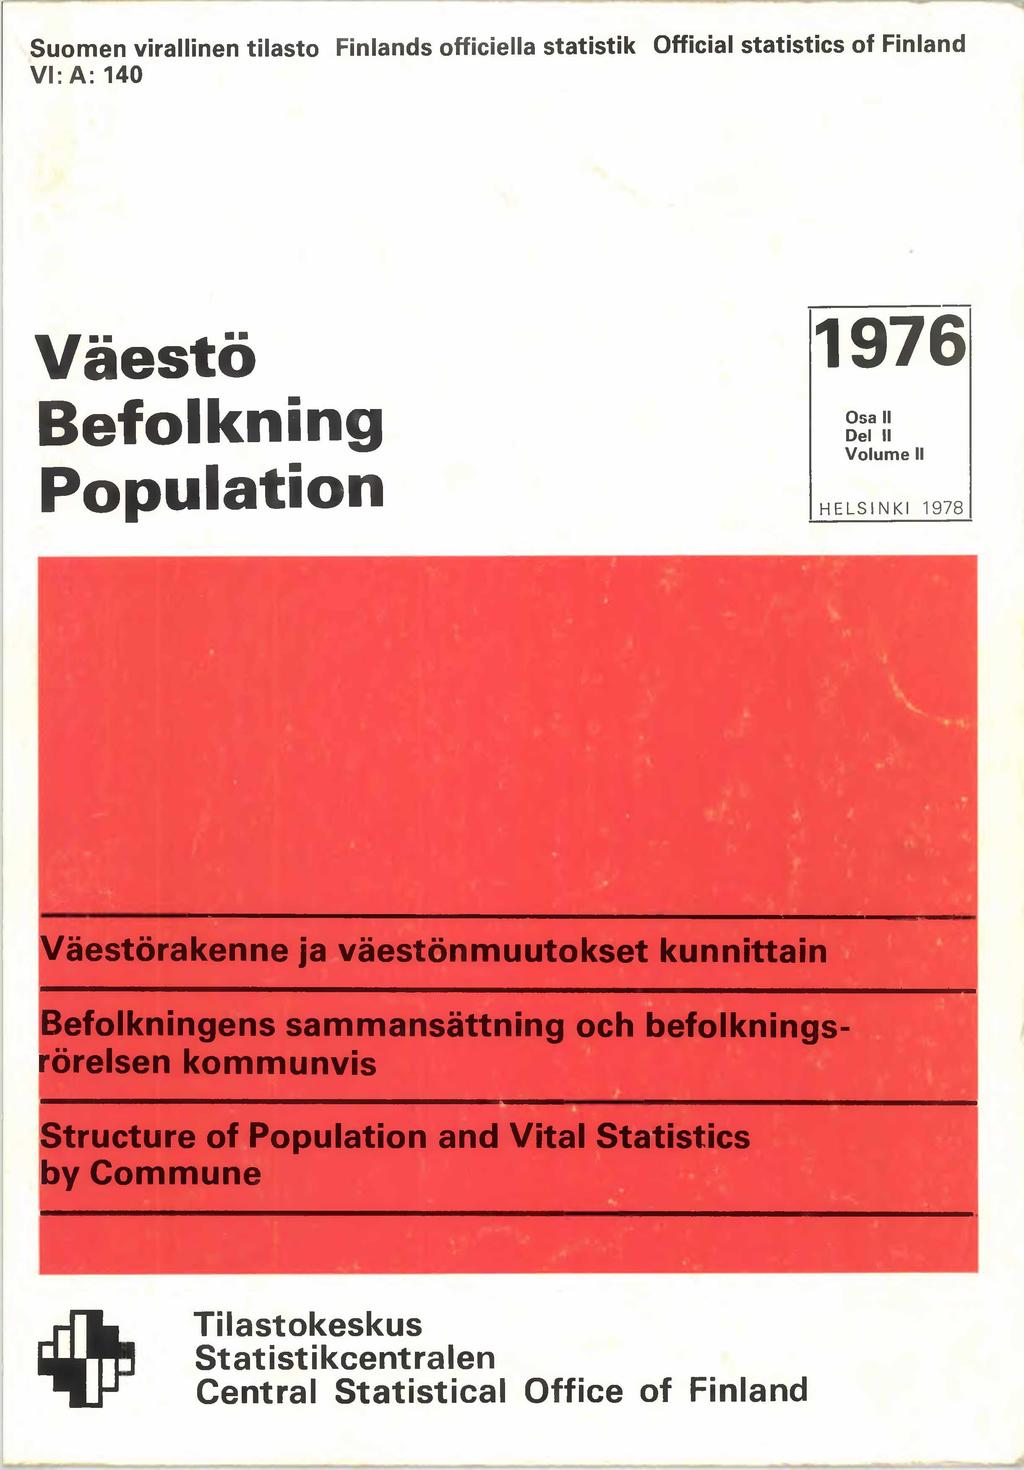 Suomen virallinen tilasto Finlands officiella Statistik Official statistics of Finland VI: A: 140 Väestö Befolkning Population 1976 Osa II Del II Volume II HELSINKI 1978 Väestörakenne ja